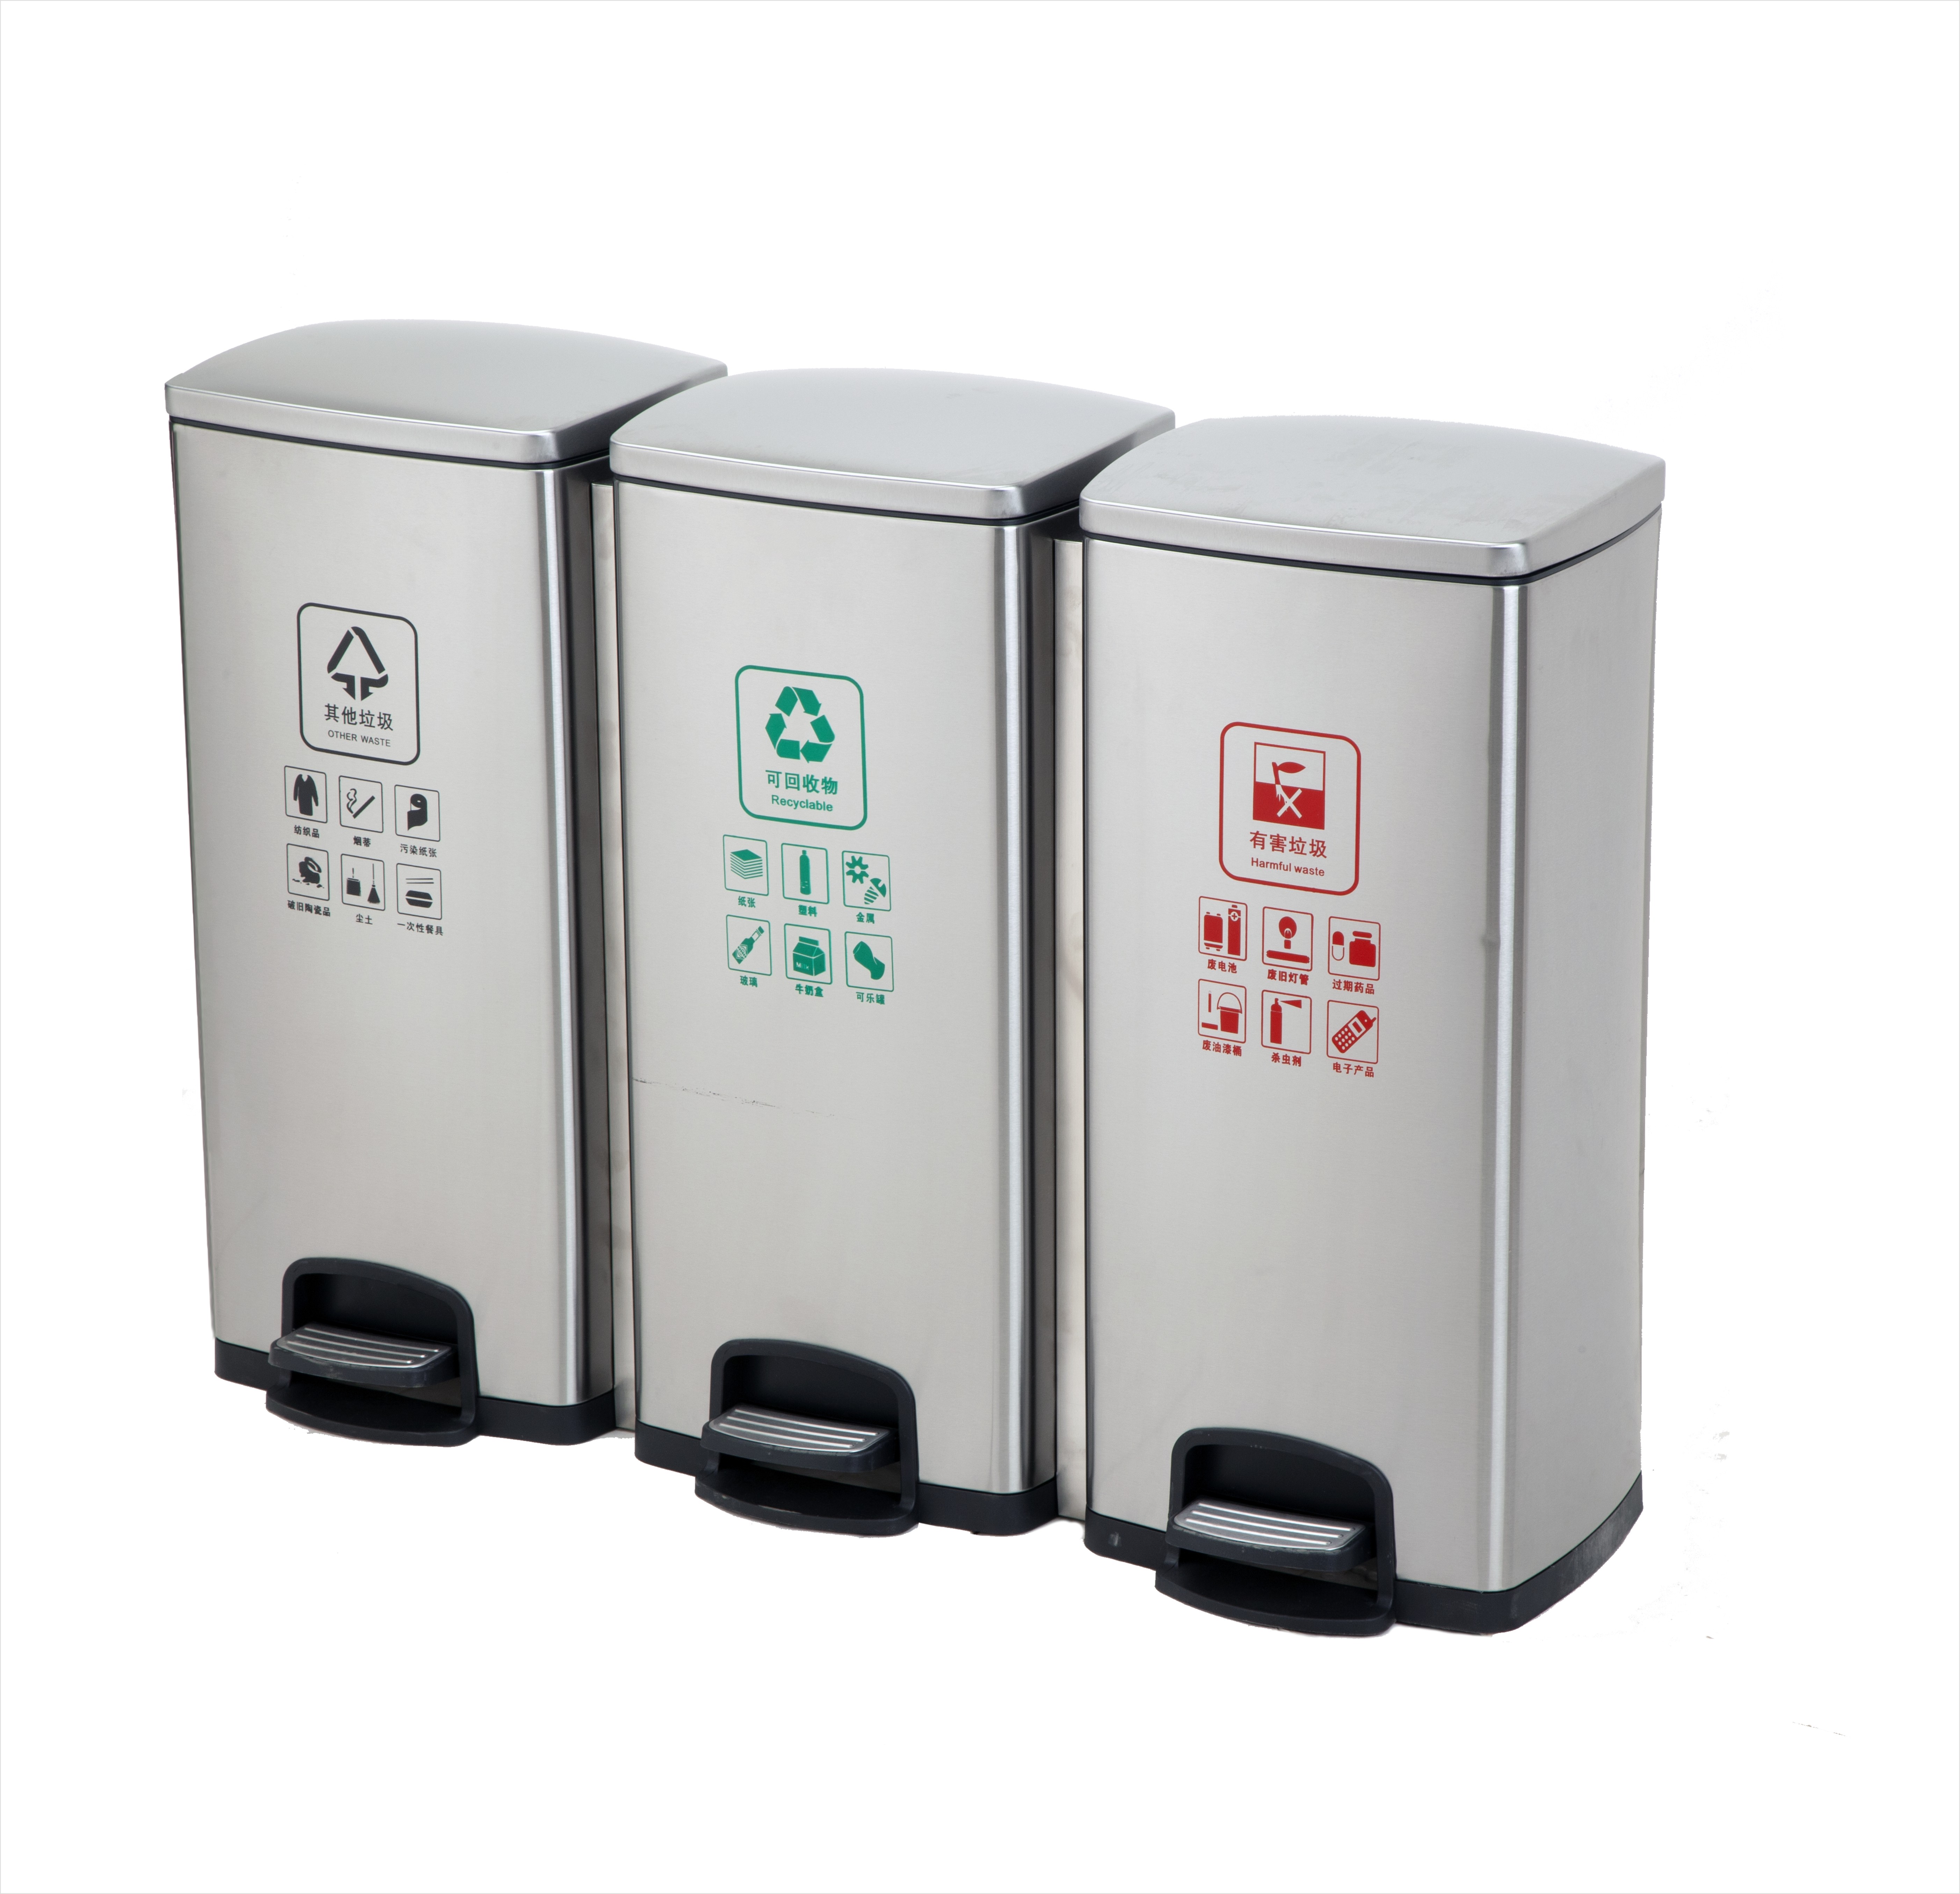 Triple 24 gallons en acier inoxydable pied contrôle poubelle salle de bain cuisine européenne poubelle silencieuse ménage poubelle cuisine